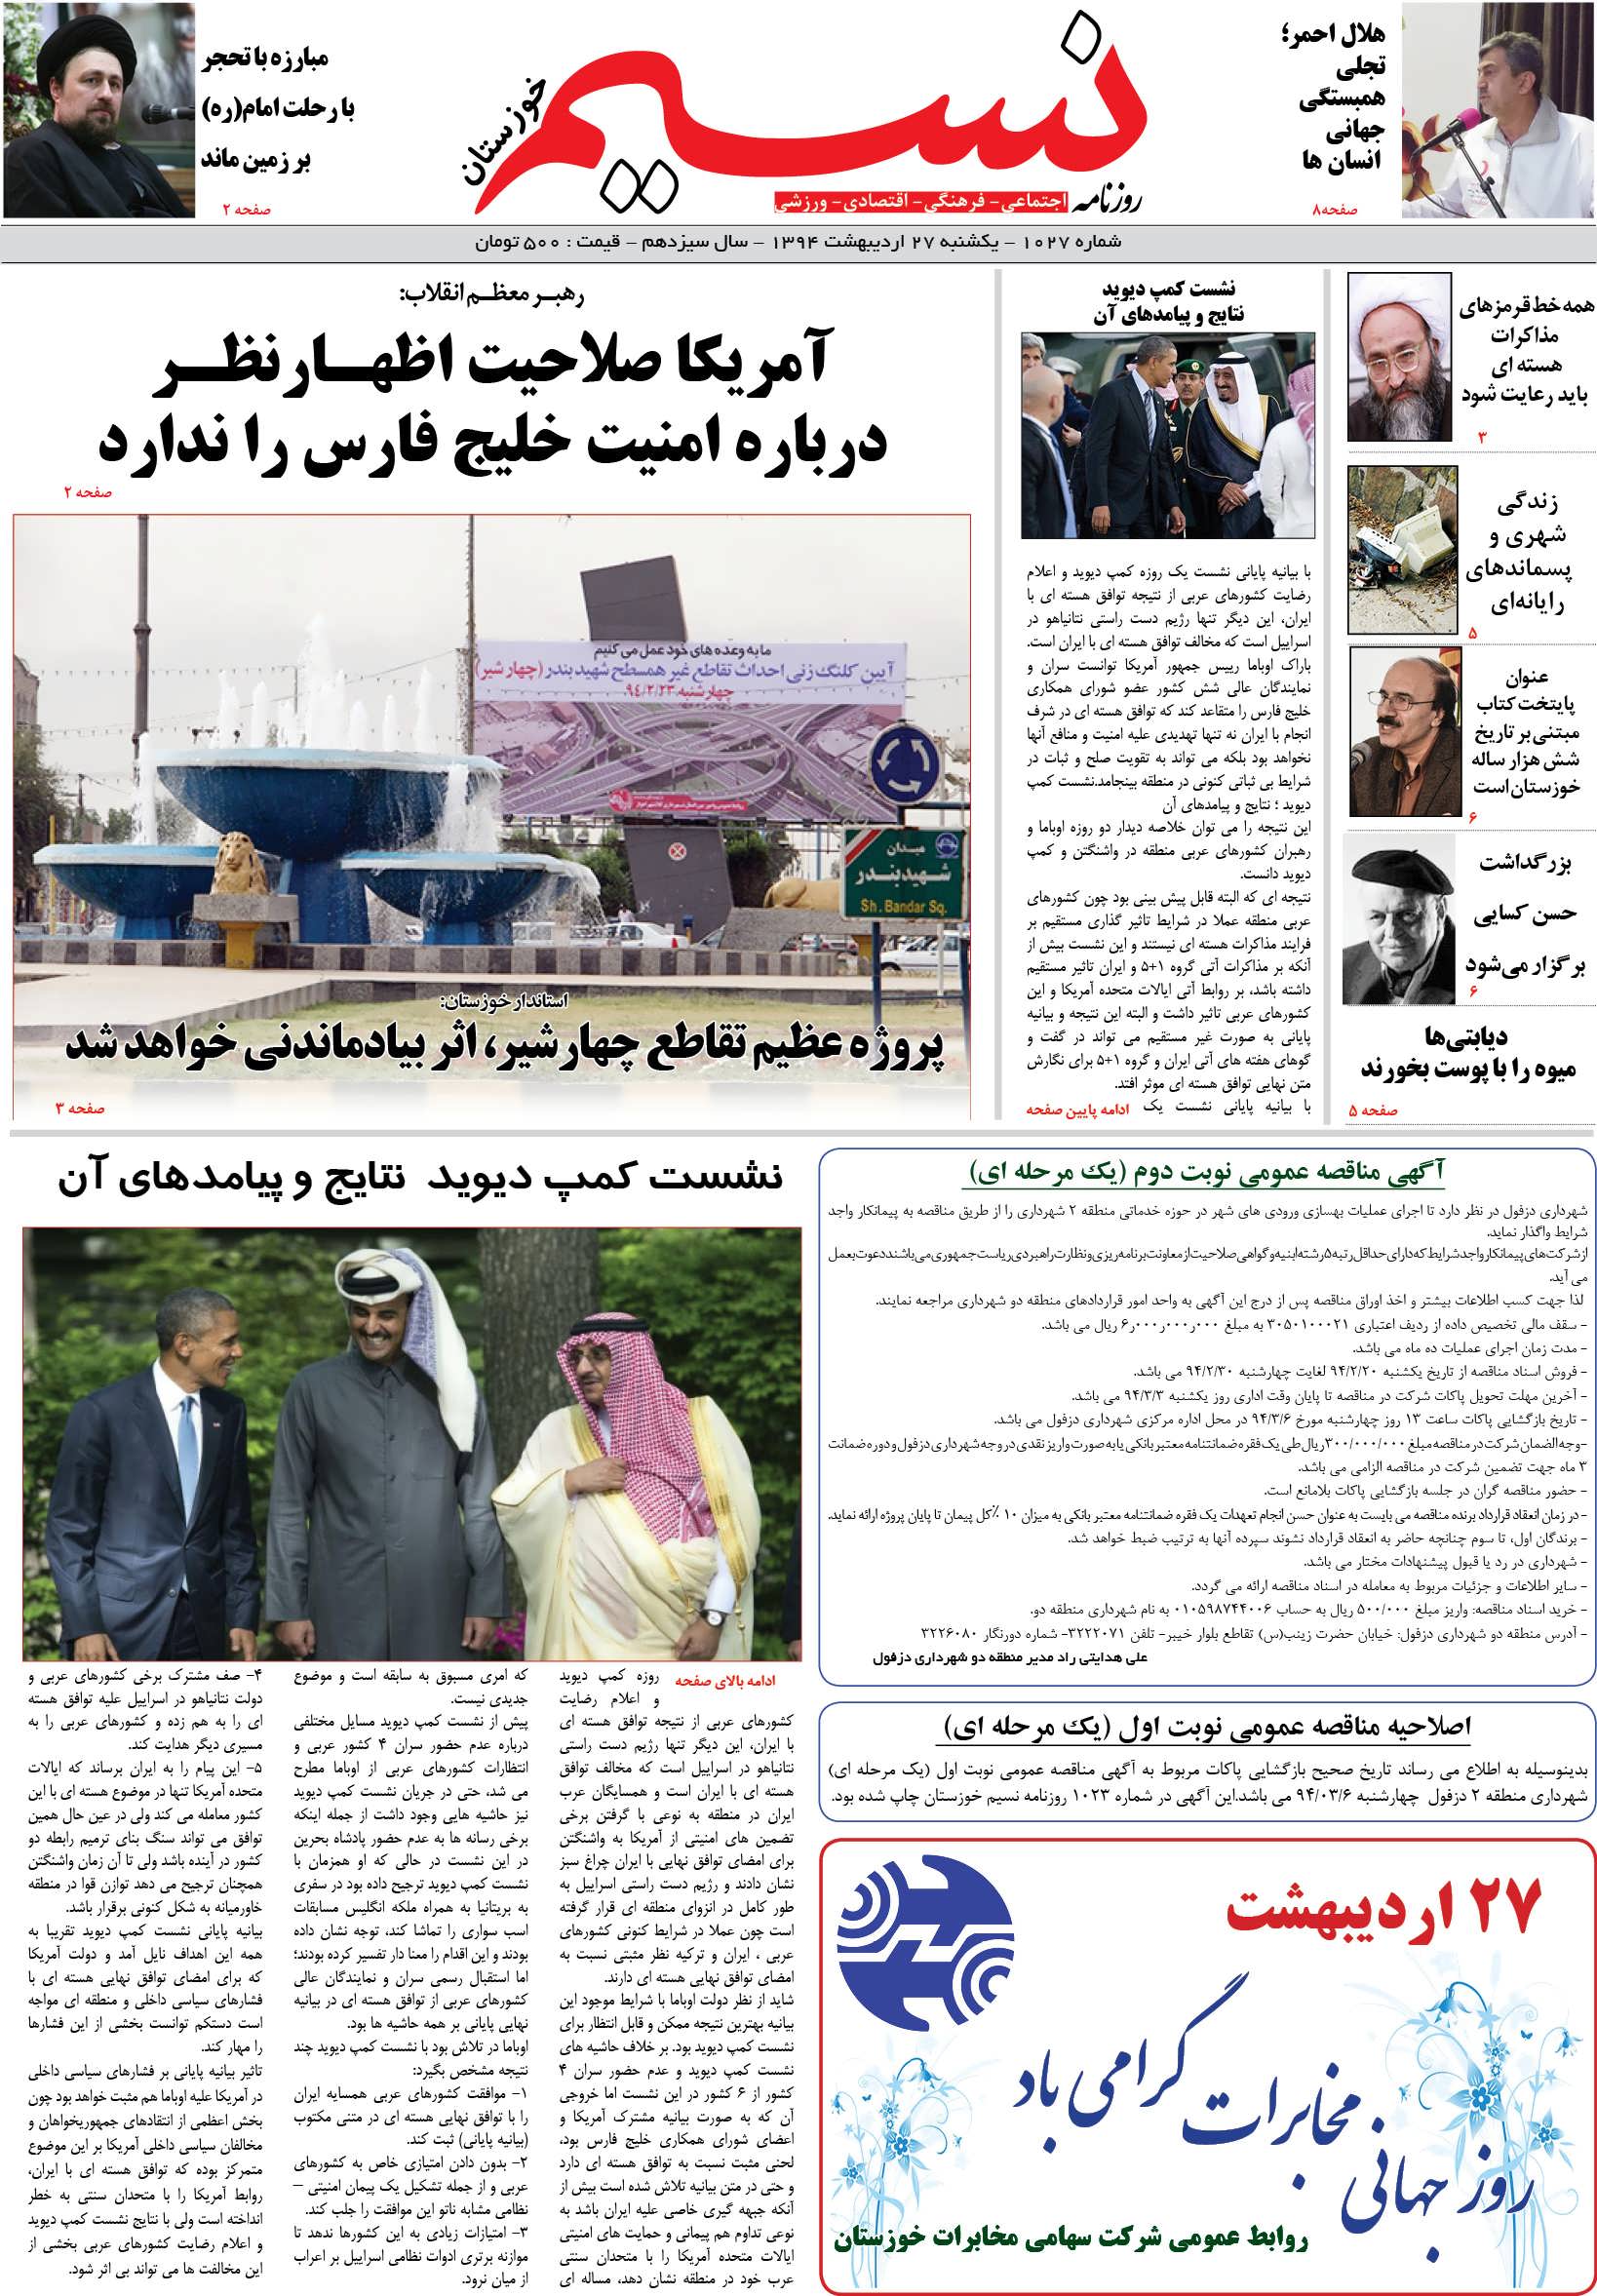 صفحه اصلی روزنامه نسیم شماره 1027